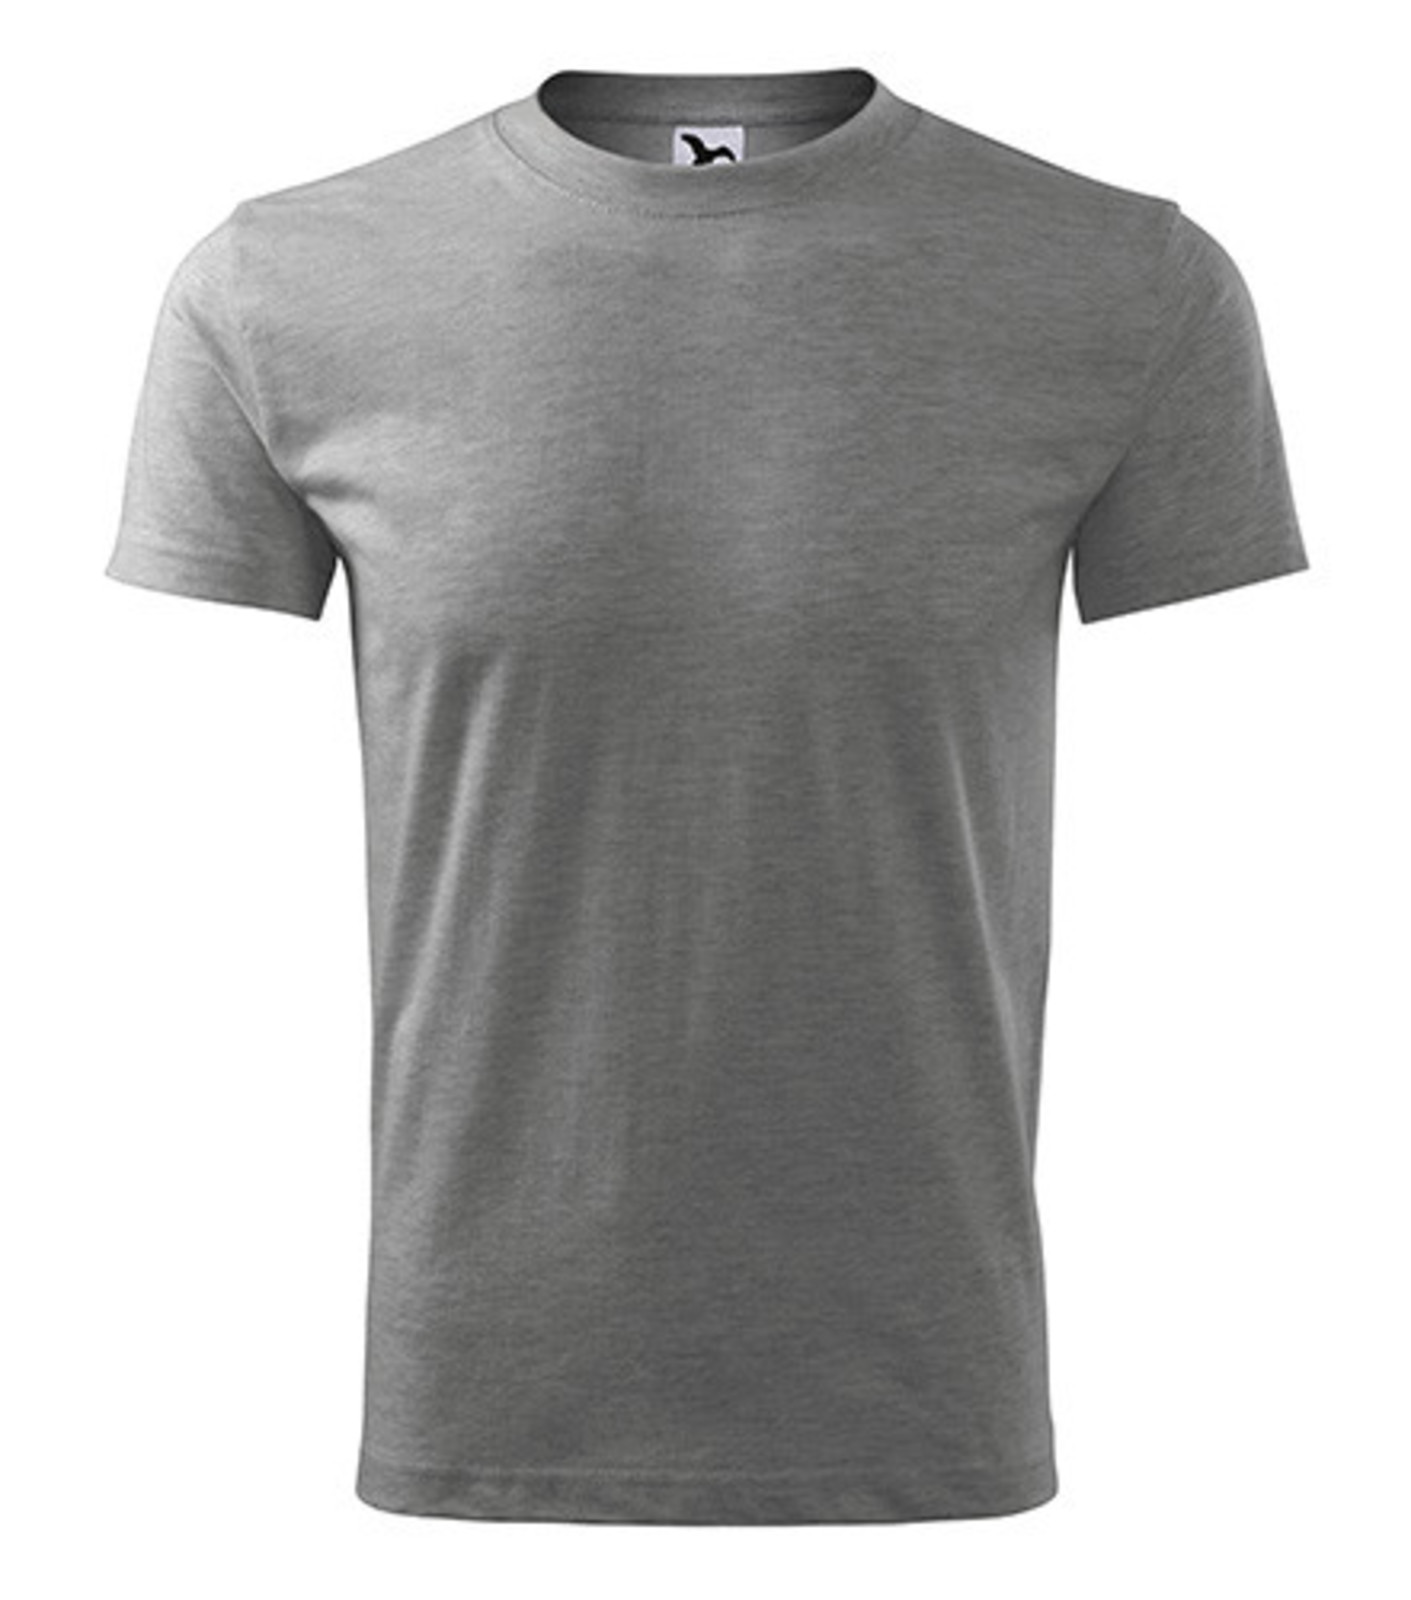 Pánske tričko Adler Classic New 132 - veľkosť: S, farba: tmavosivý melír